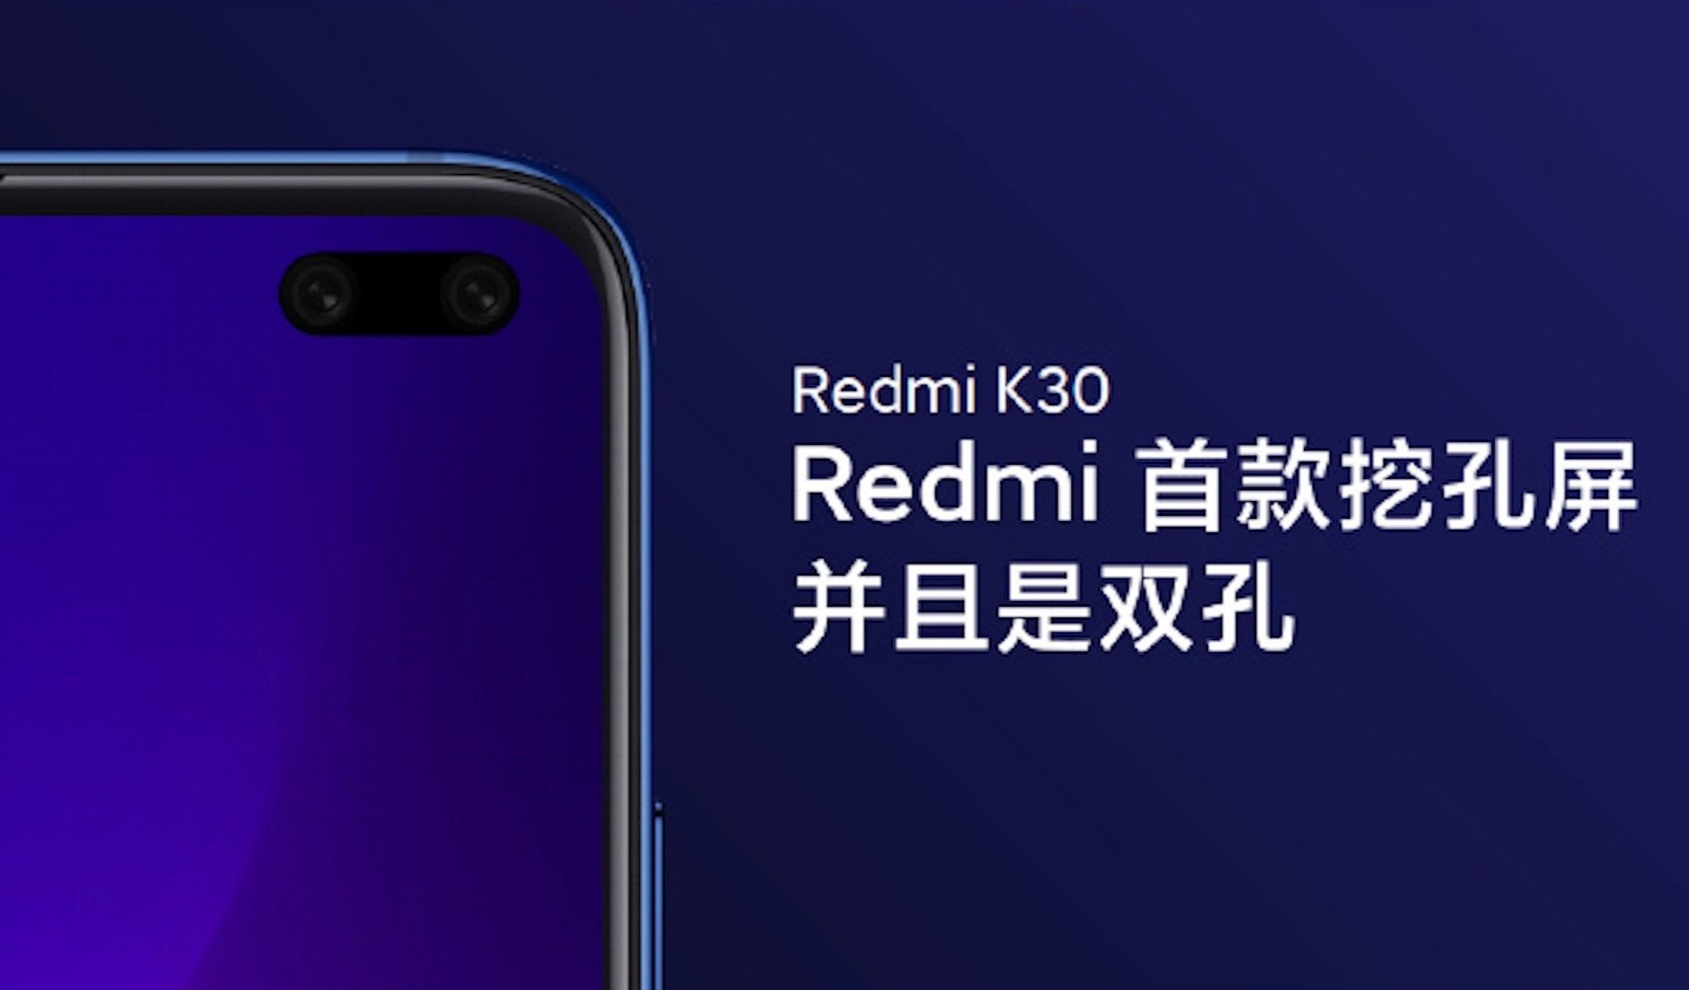 شاومي تستعد للإعلان الرسمي عن هاتف Redmi K30 في شهر ديسمبر المقبل